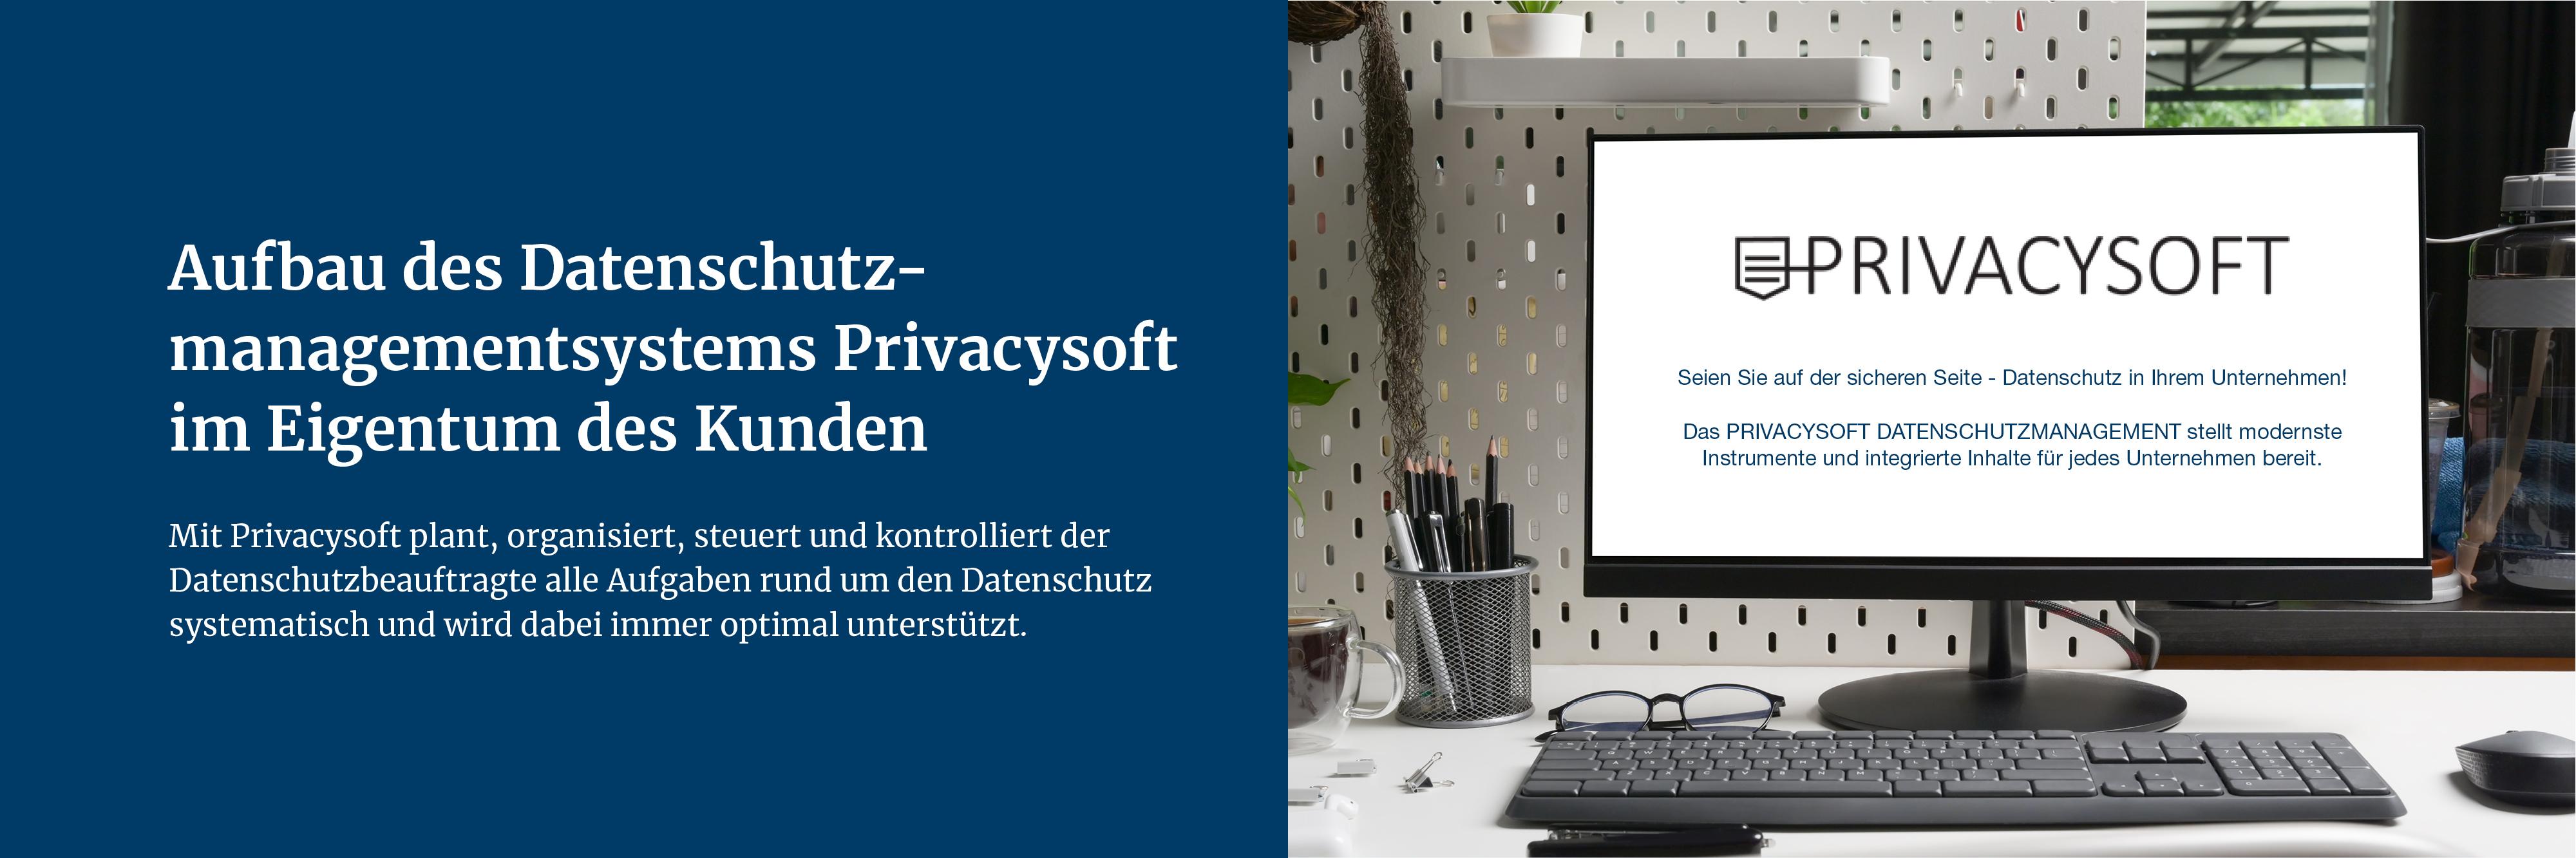 Datenschutz_Privacysoft.jpg